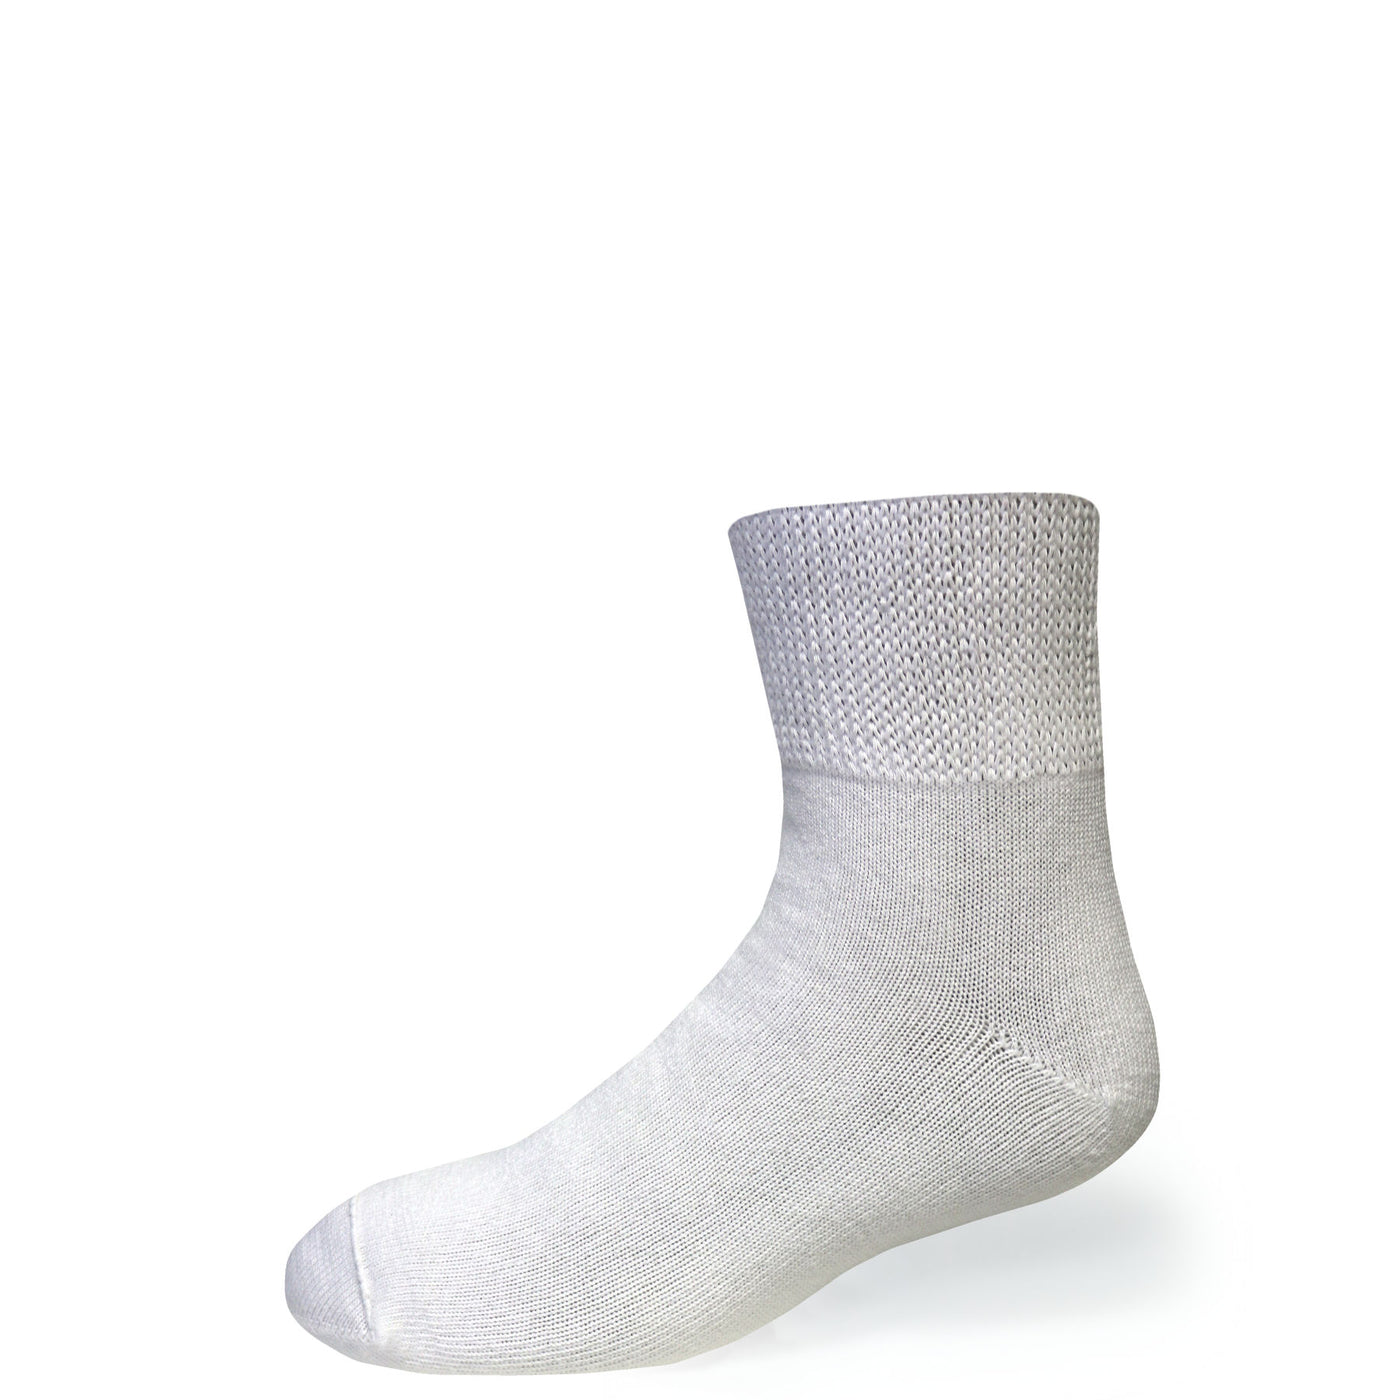 Bigger Big Foot Comfort Cotton Diabetic Quarter Socks